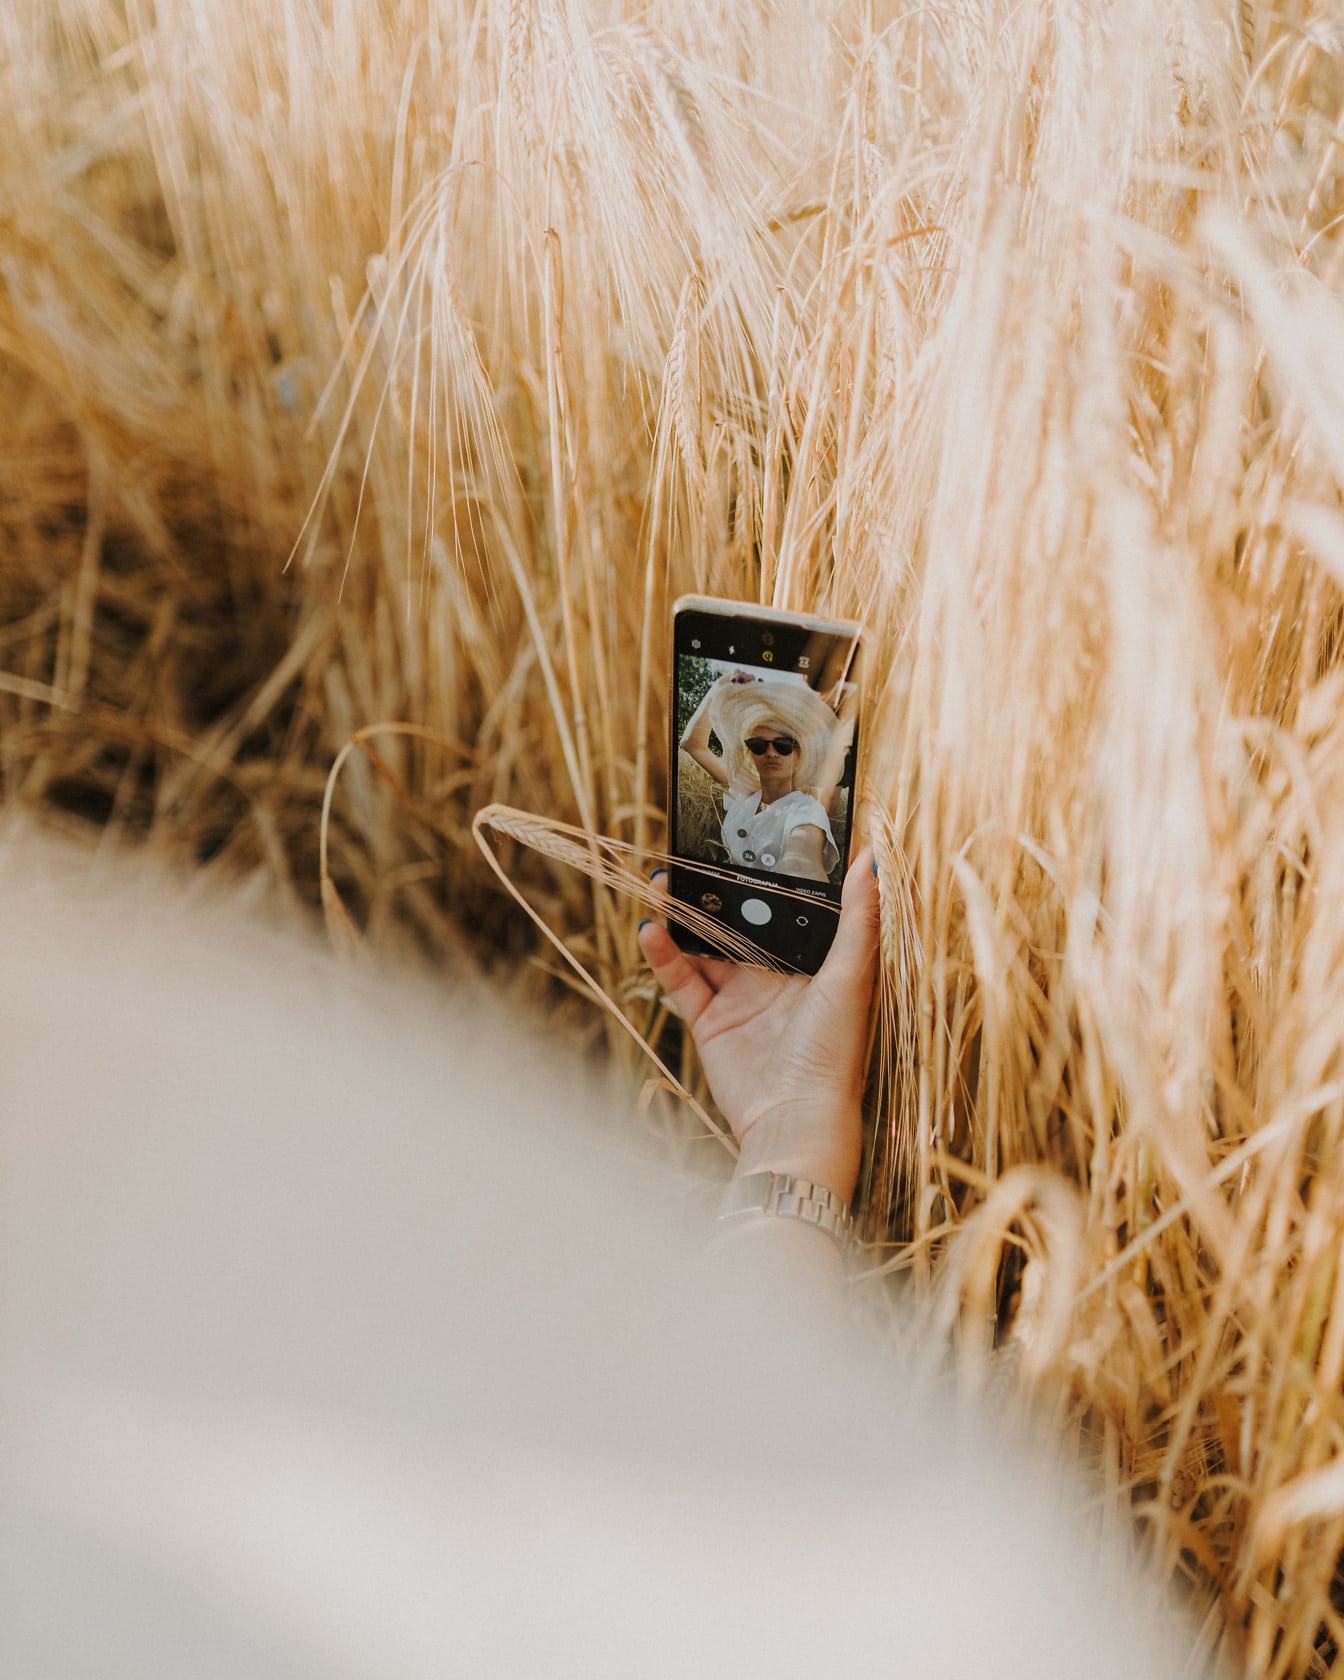 Блондинка в соломенной шляпе делает селфи на мобильный телефон в пшенице